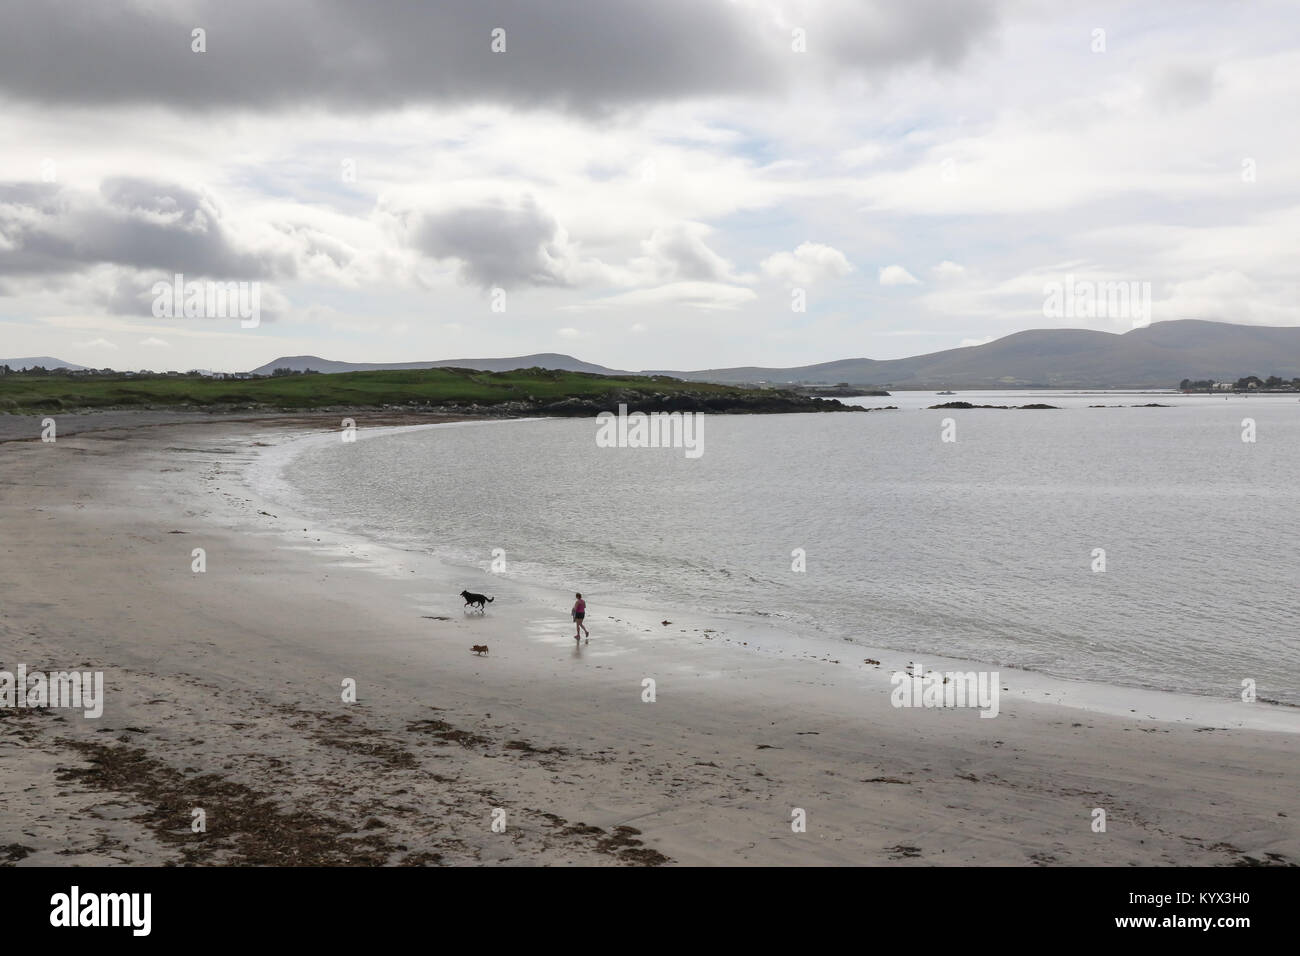 Weißen Strand Strand, County Kerry. Ein Strand mit Blauer Flagge in der Nähe von cahirsiveen im County Kerry. Stockfoto